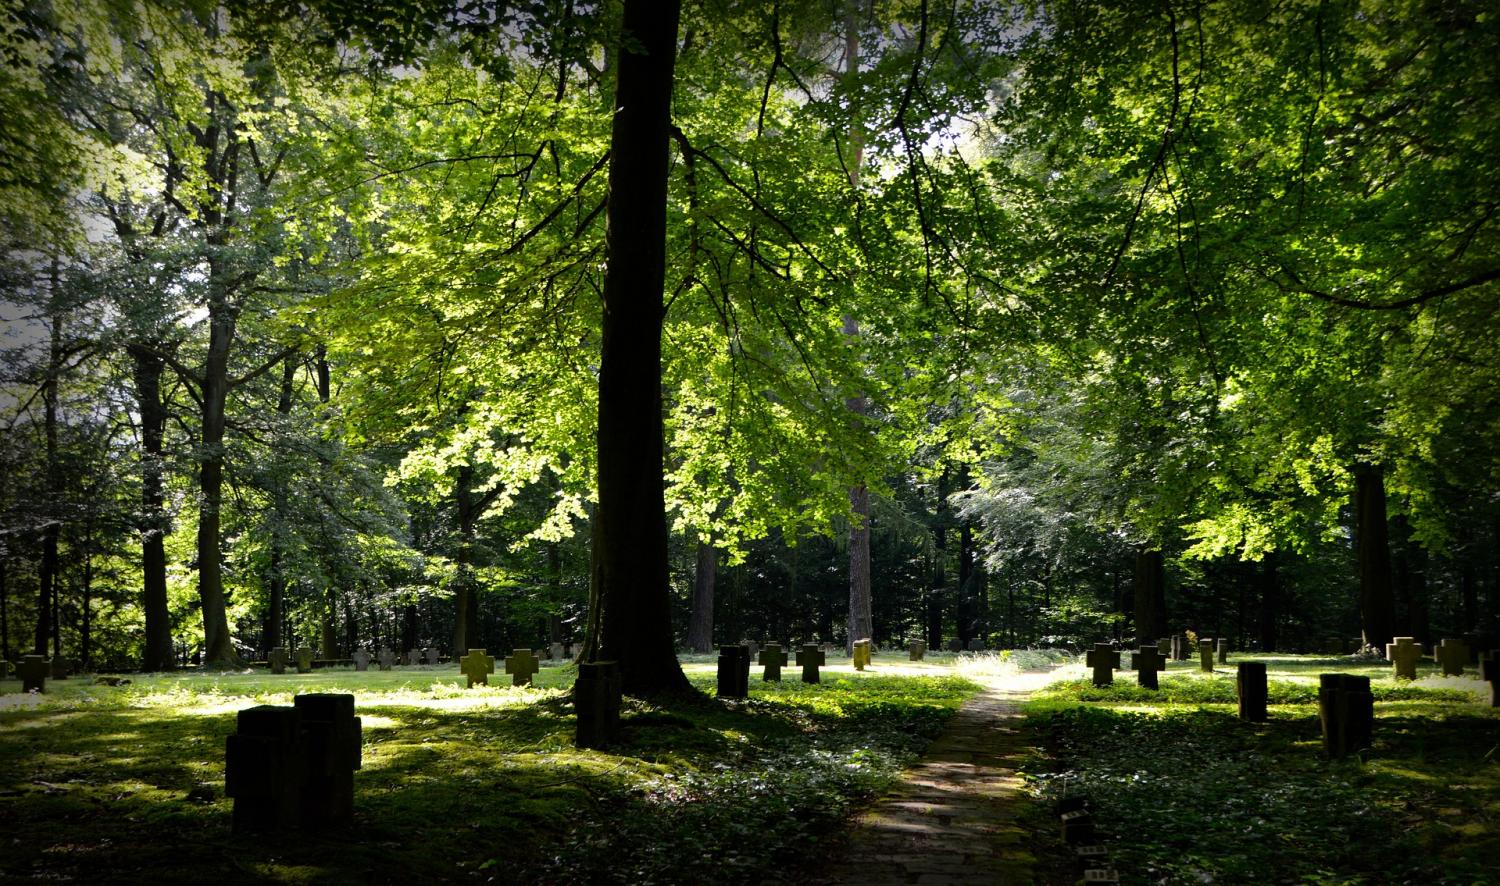 A Green Burial For an Environmentally Friendly Choice